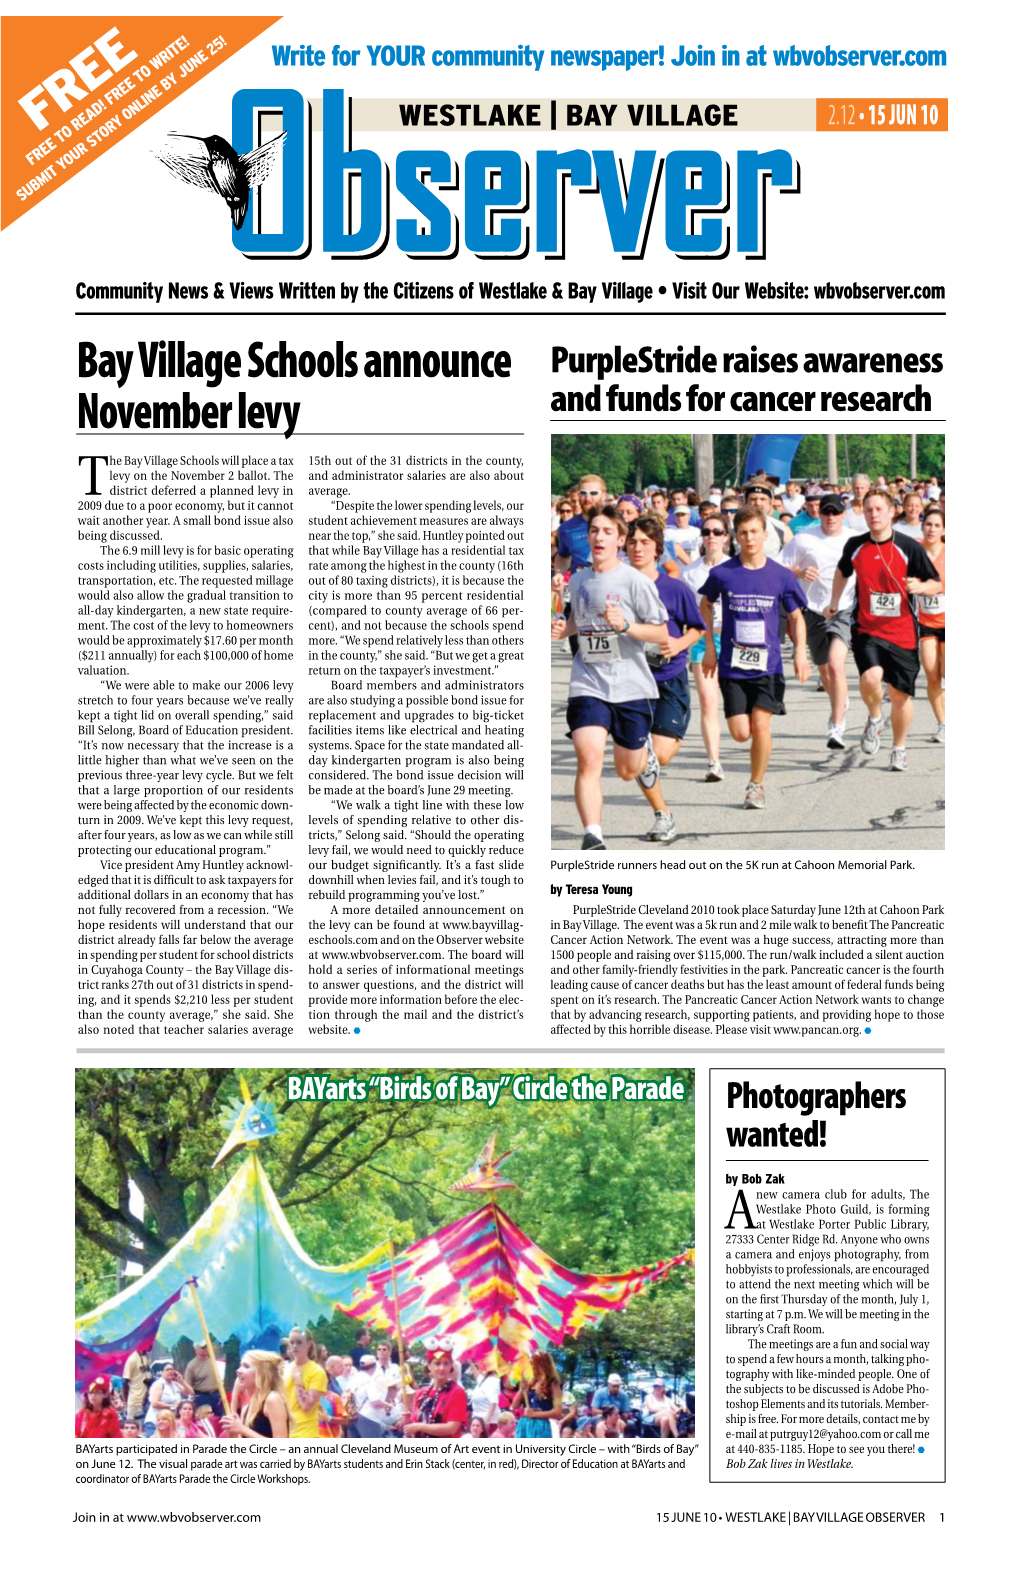 Bay Village Schools Announce November Levy